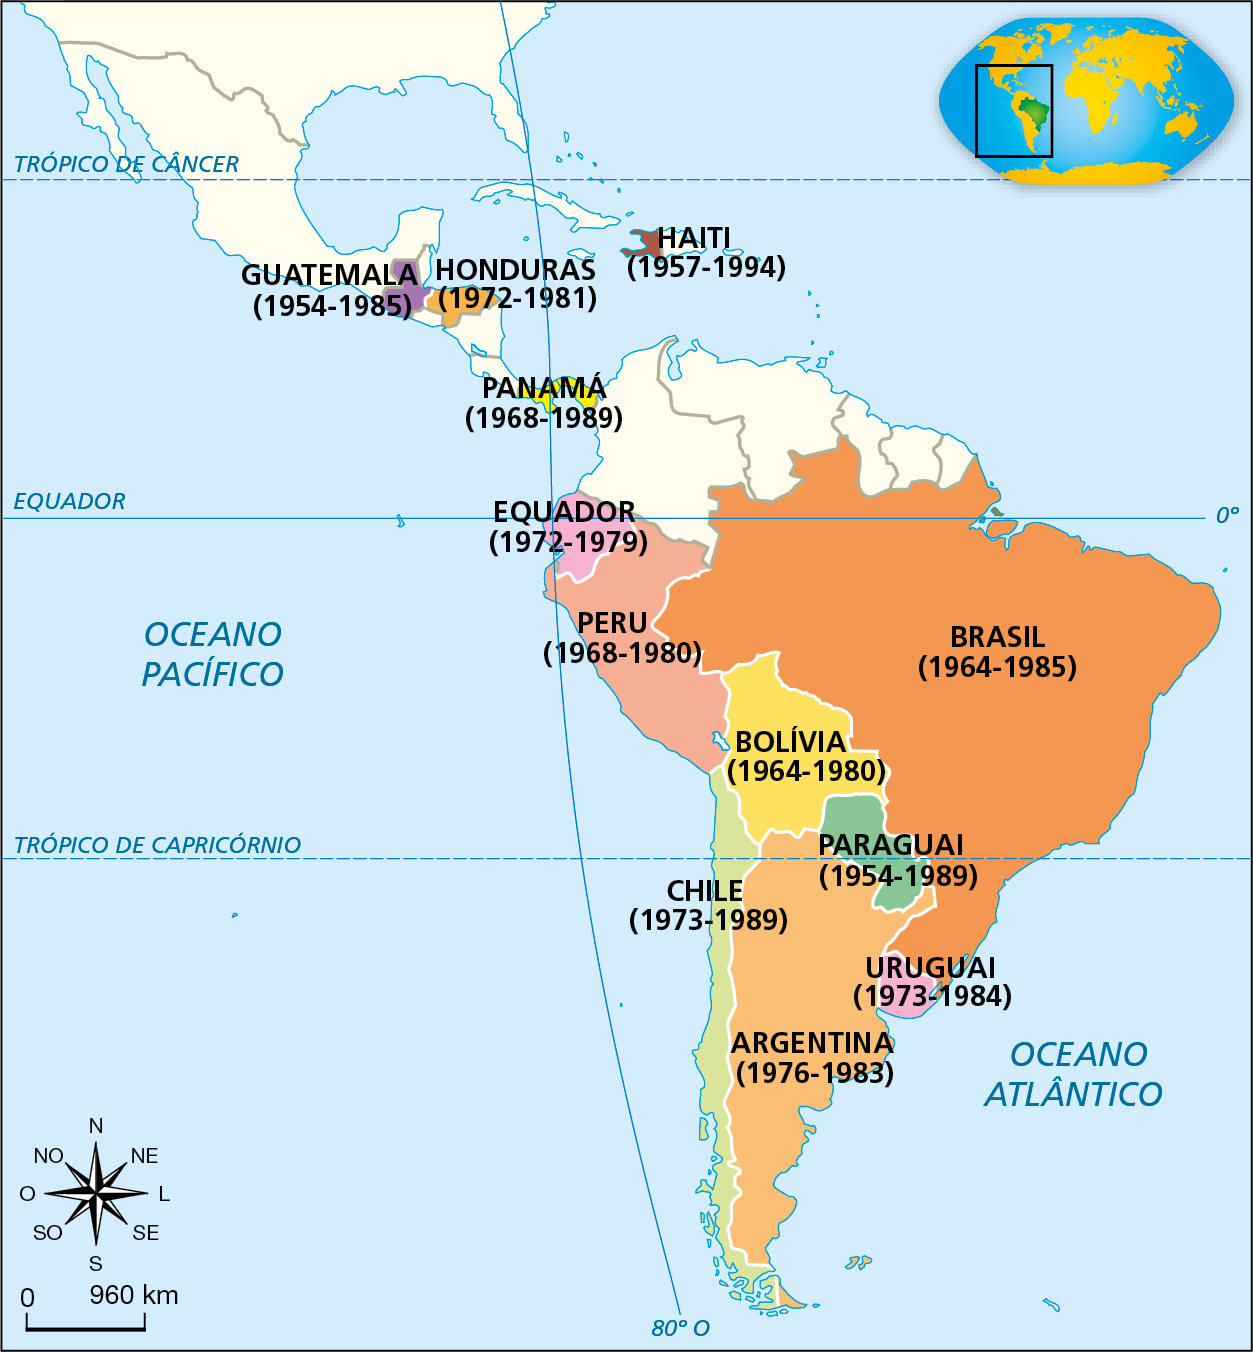 Mapa. Ditaduras na América Latina, 1954-1994. Destaque para o continente americano. Sem legenda.
No mapa, o nome dos países é acompanhado do período de duração das respectivas ditaduras: Haiti (1957 a 1994); Honduras (1972 a 1981); Guatemala (1954 a 1985); Panamá (1968 a 1989); Equador (1972 a 1979); Peru (1968 a 1980); Bolívia (1964 a 1980); Brasil (1964 a 1985); Paraguai (1954 a 1989); Chile (1973 a 1989); Uruguai (1973 a 1984); Argentina (1976 a 1983).
No canto inferior esquerdo, rosa dos ventos e escala de 0 a 960 quilômetros.